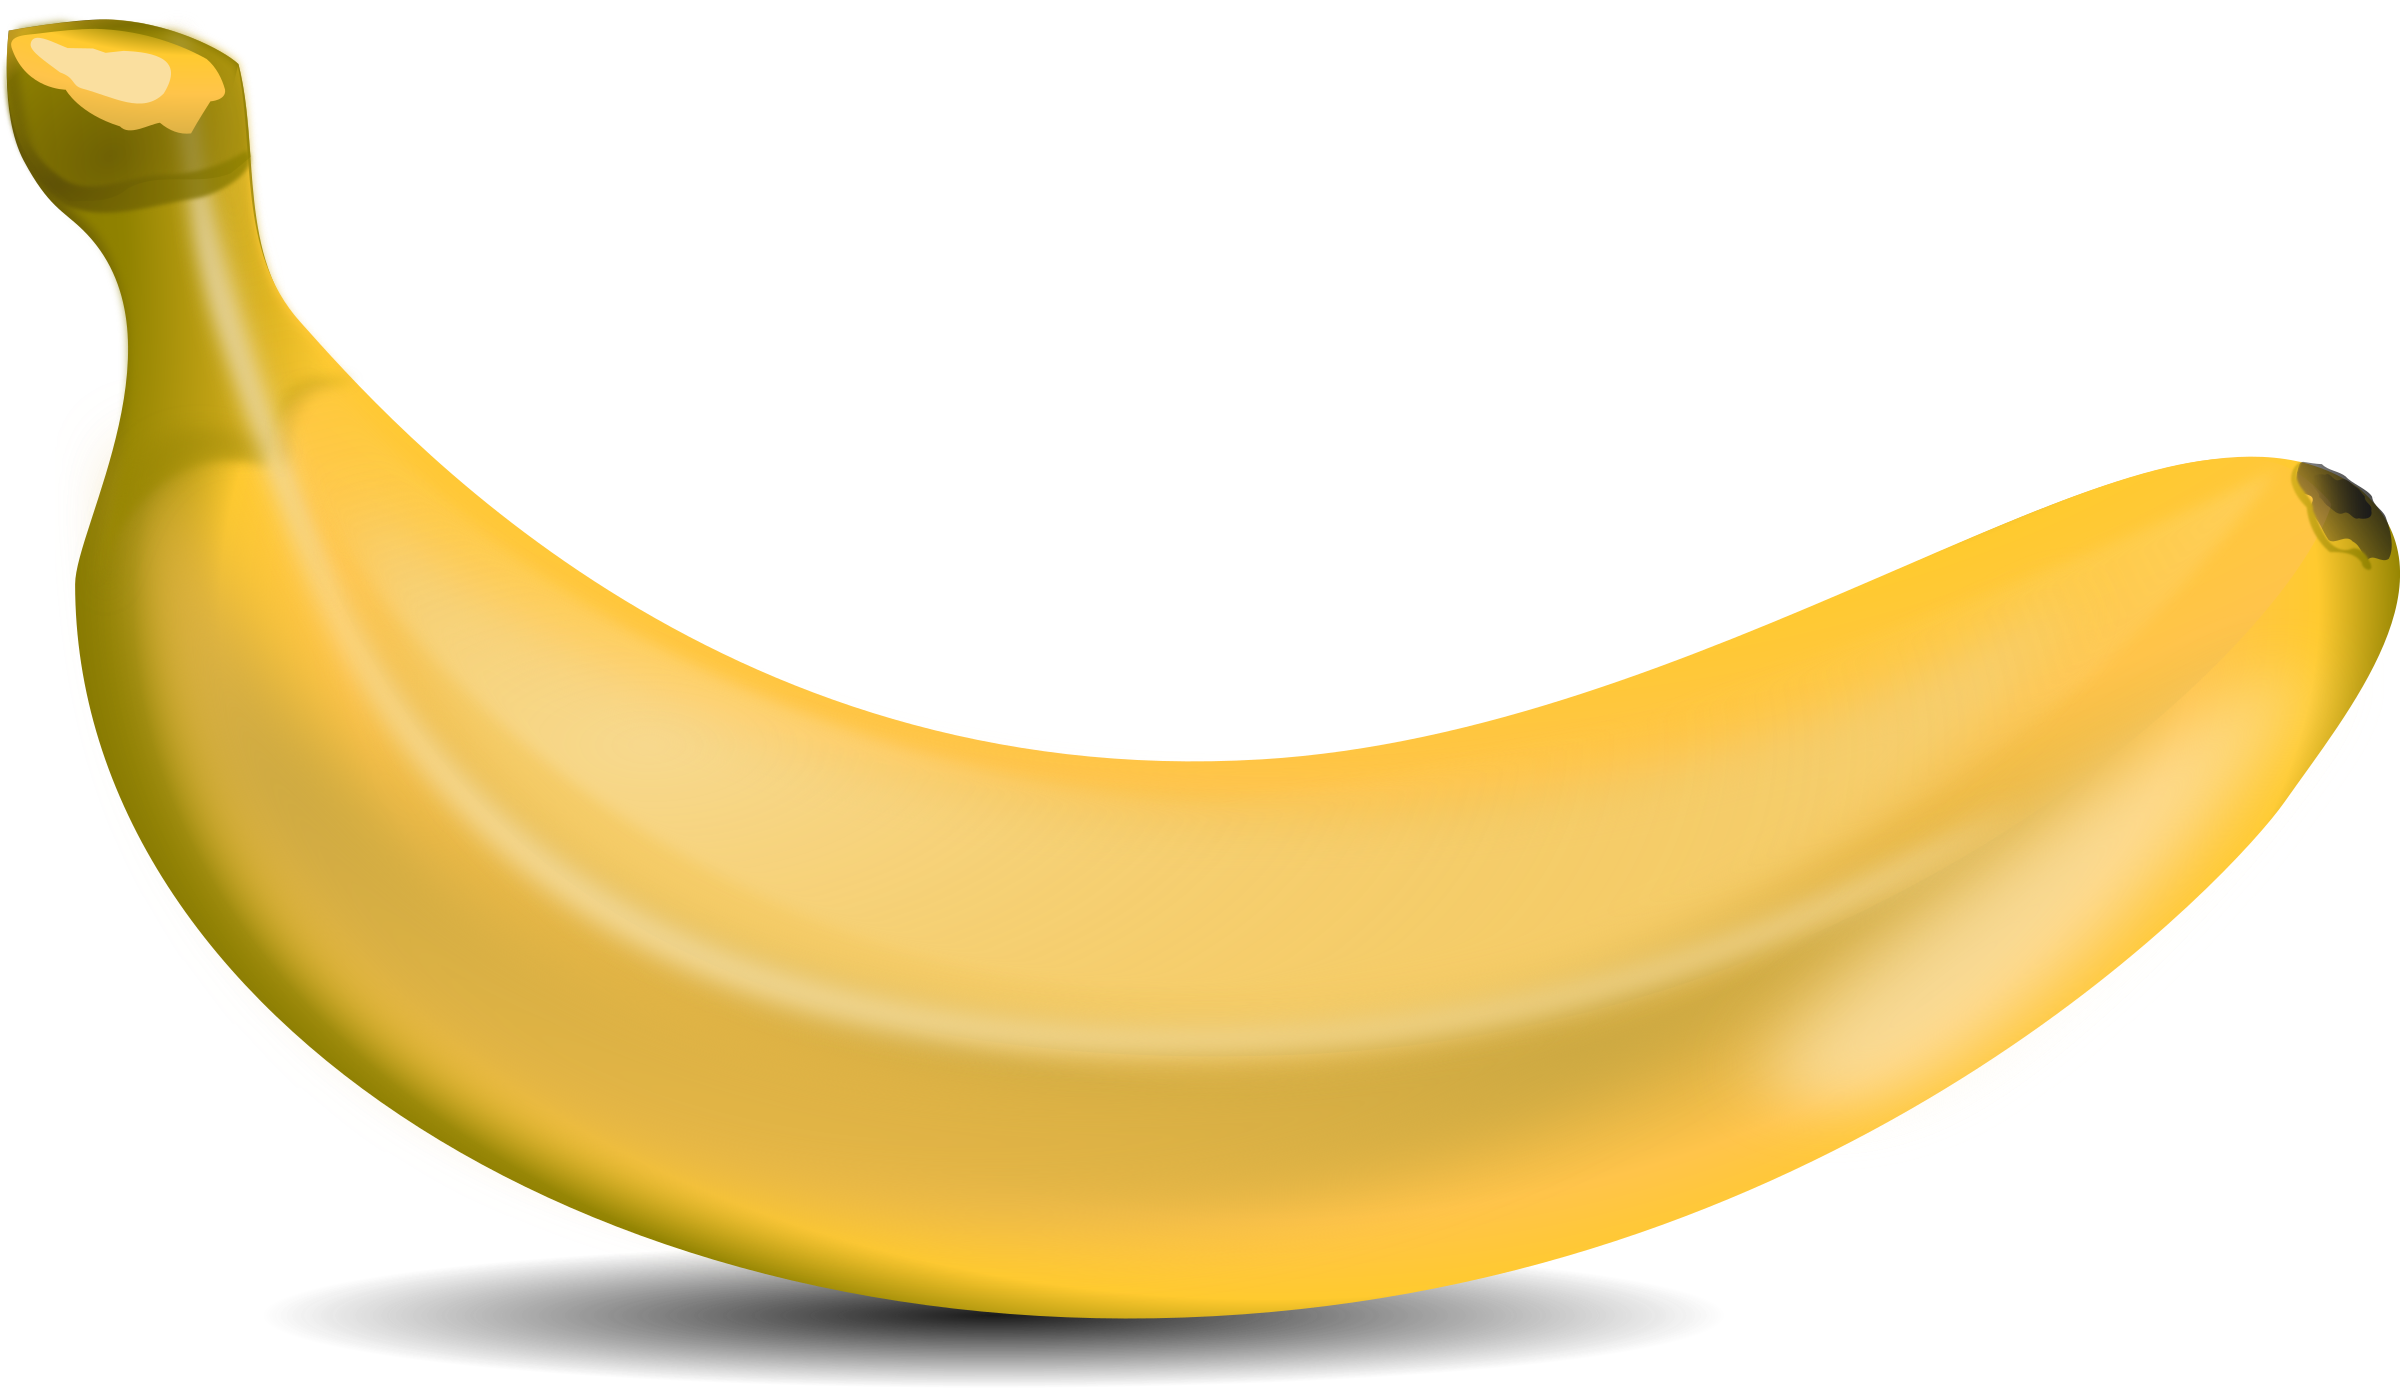 Banana Clip Art Free Png - Banana, Transparent background PNG HD thumbnail